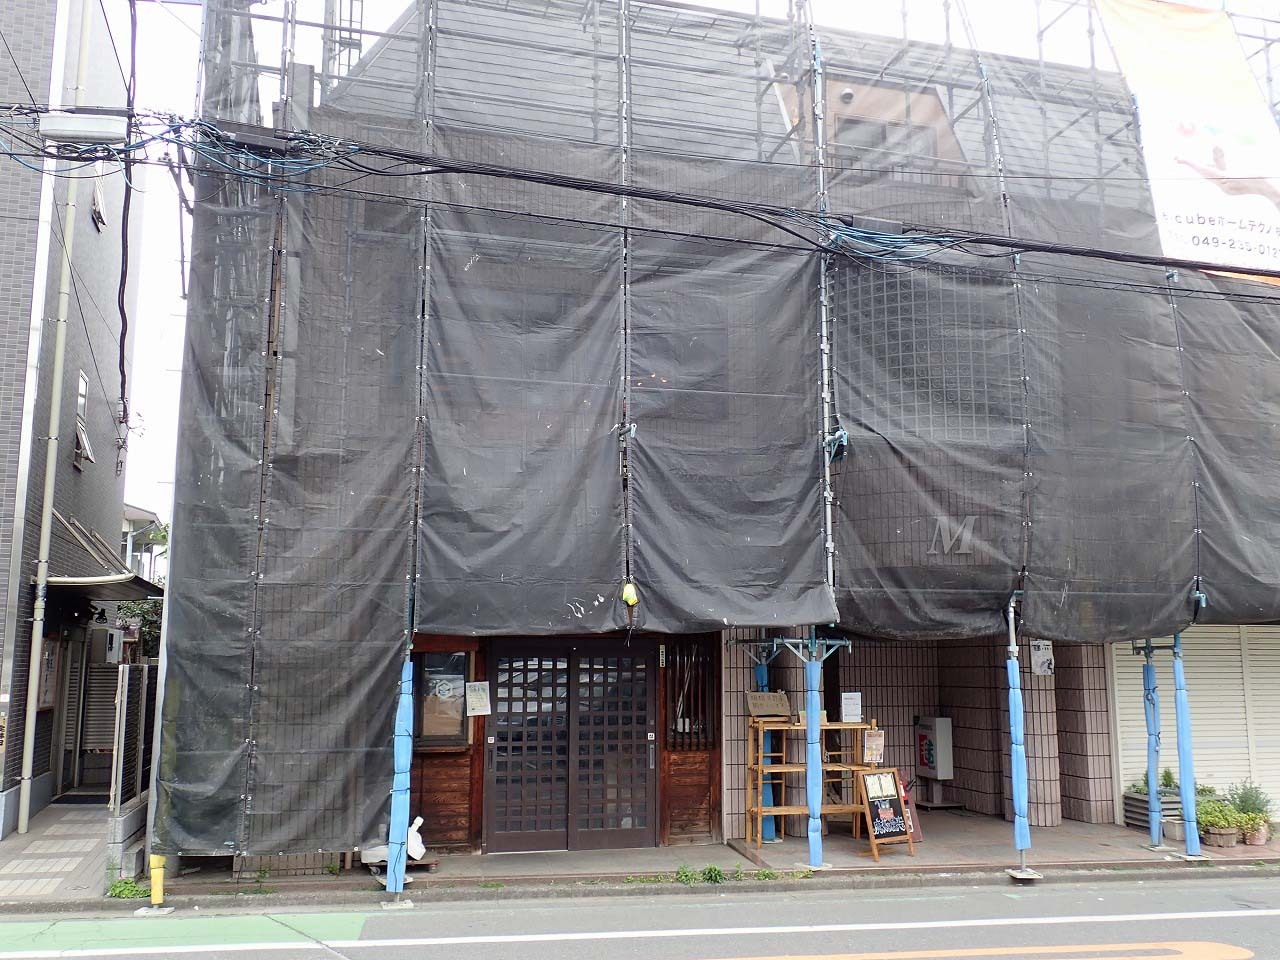 2023年4月25日現在は建物の外装工事中でしたがお店は営業していました。場所は東武東上線＆JR川越線・川越駅から徒歩約5分、西武新宿線・本川越駅からも徒歩約5分です